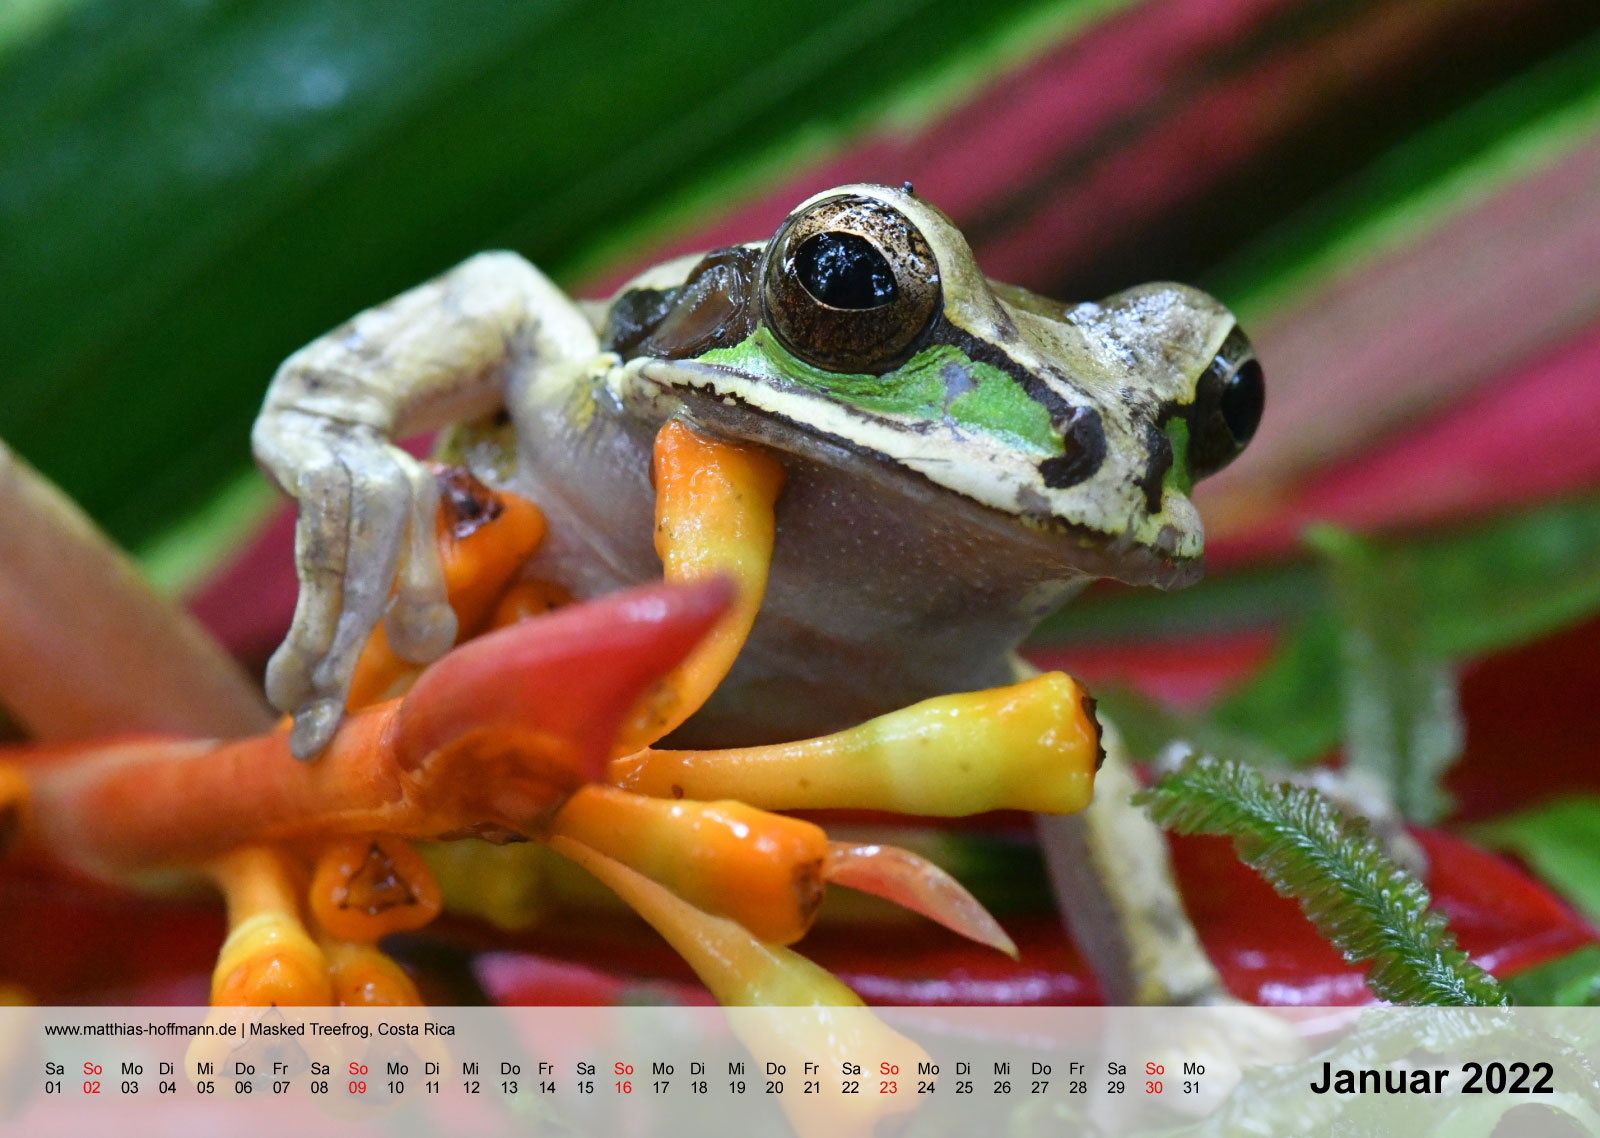 Masked Treefrog, Costa Rica | Kalender 2022 - Januar